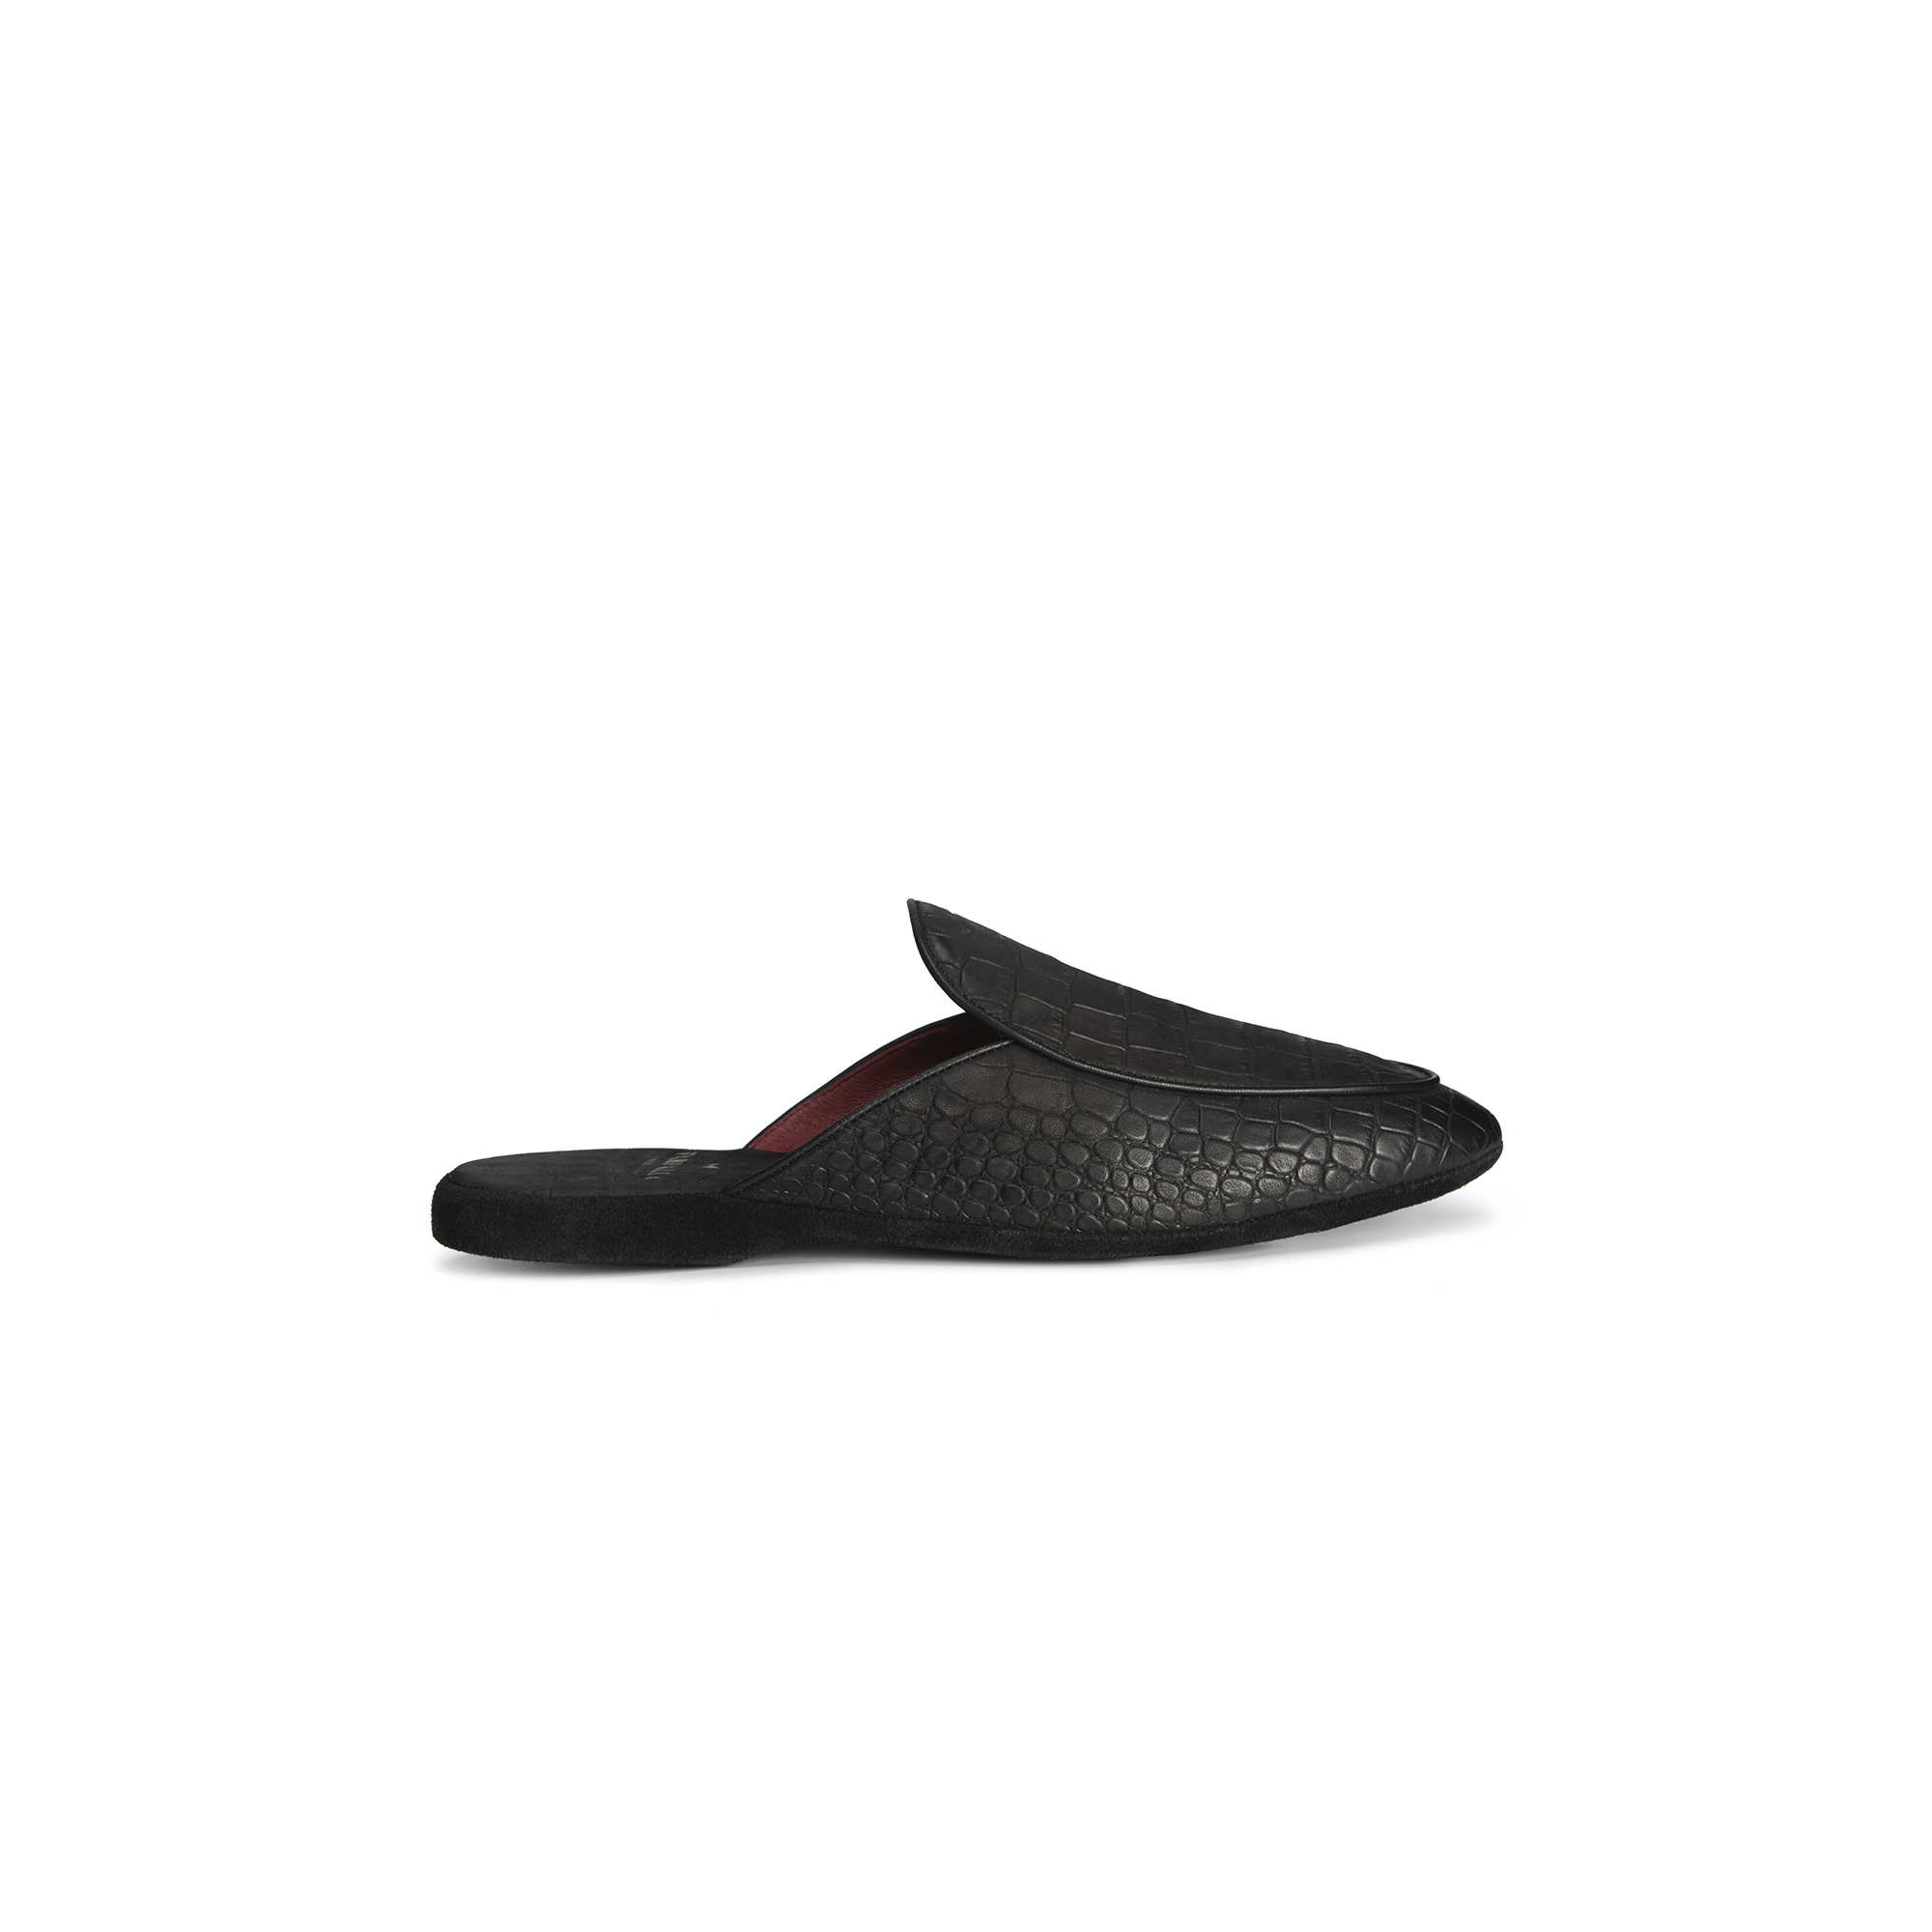 Pantofola aperta interno pelle stampato cocco nero - Farfalla italian slippers